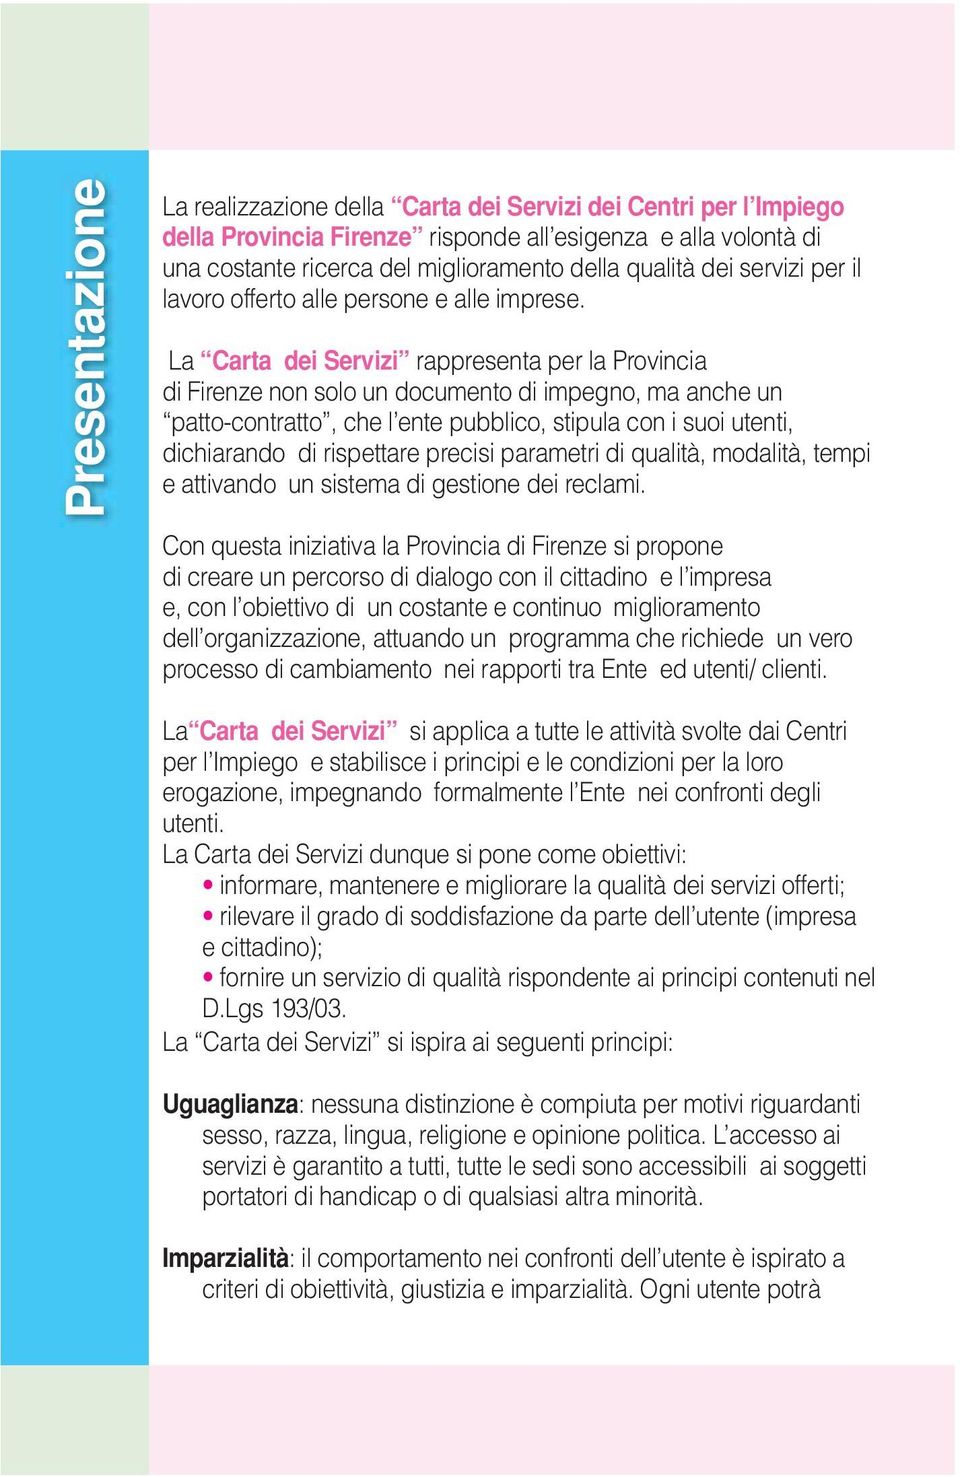 La Carta dei Servizi rappresenta per la Provincia di Firenze non solo un documento di impegno, ma anche un patto-contratto, che l ente pubblico, stipula con i suoi utenti, dichiarando di rispettare